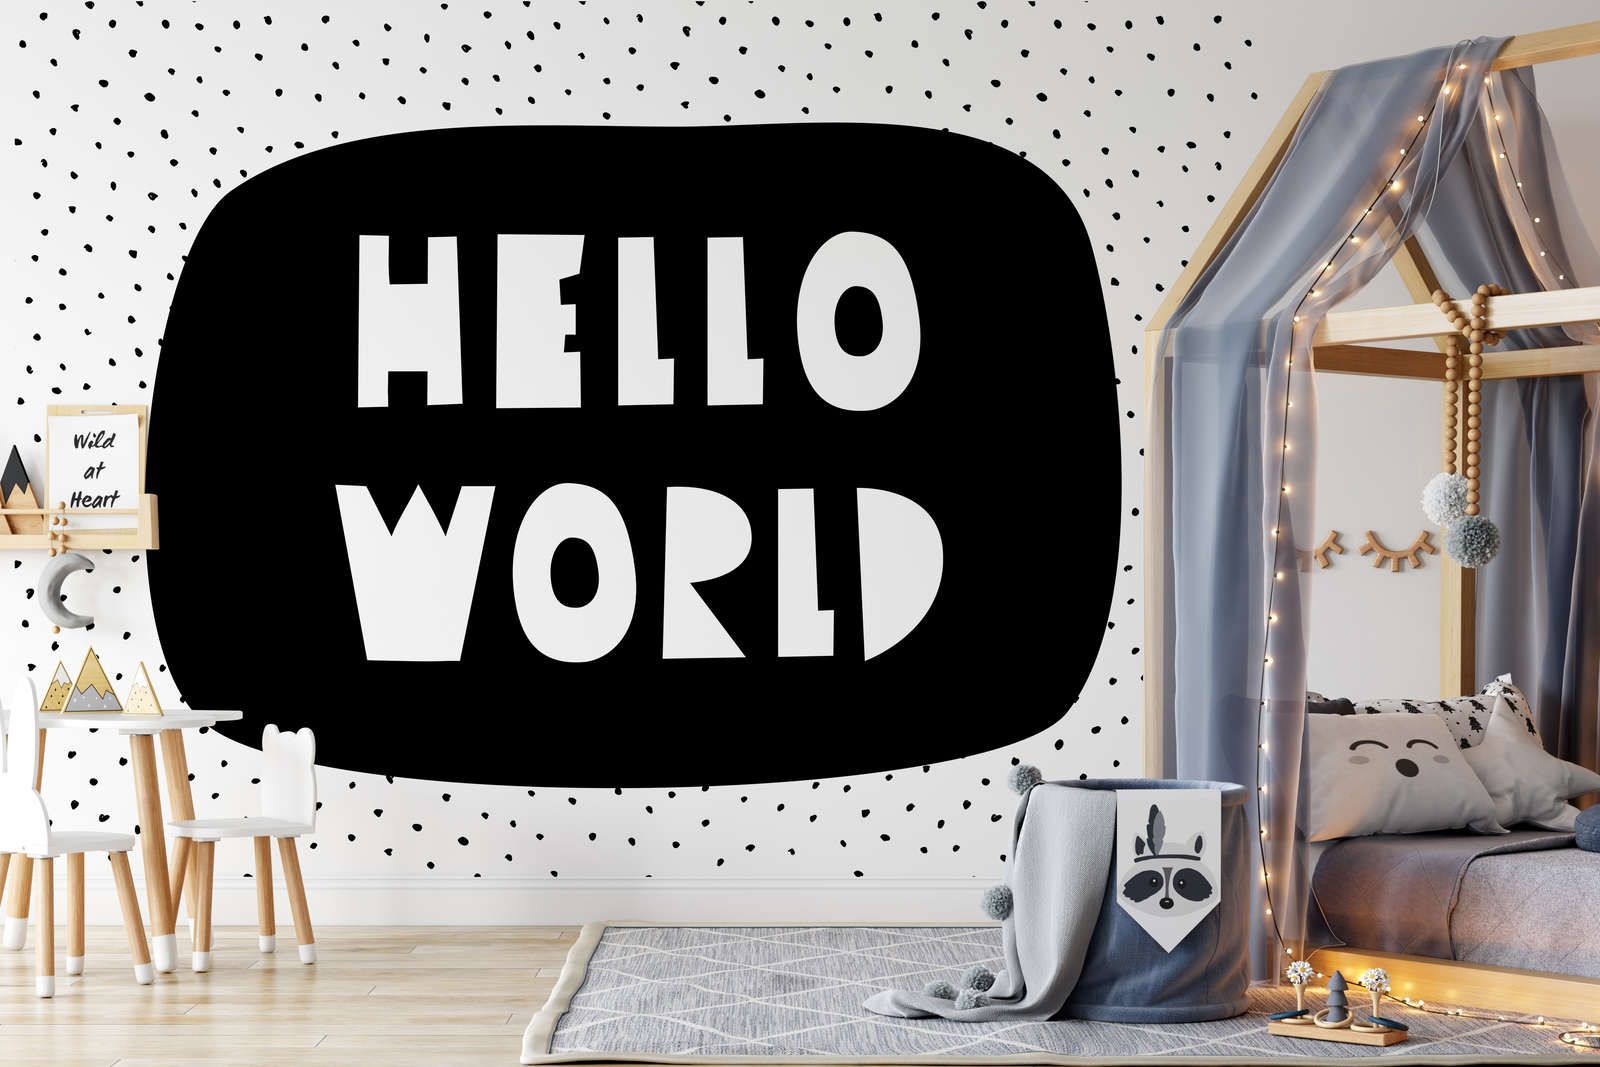             Digital behang voor kinderkamer met "Hello World" letters - structuurvlies
        